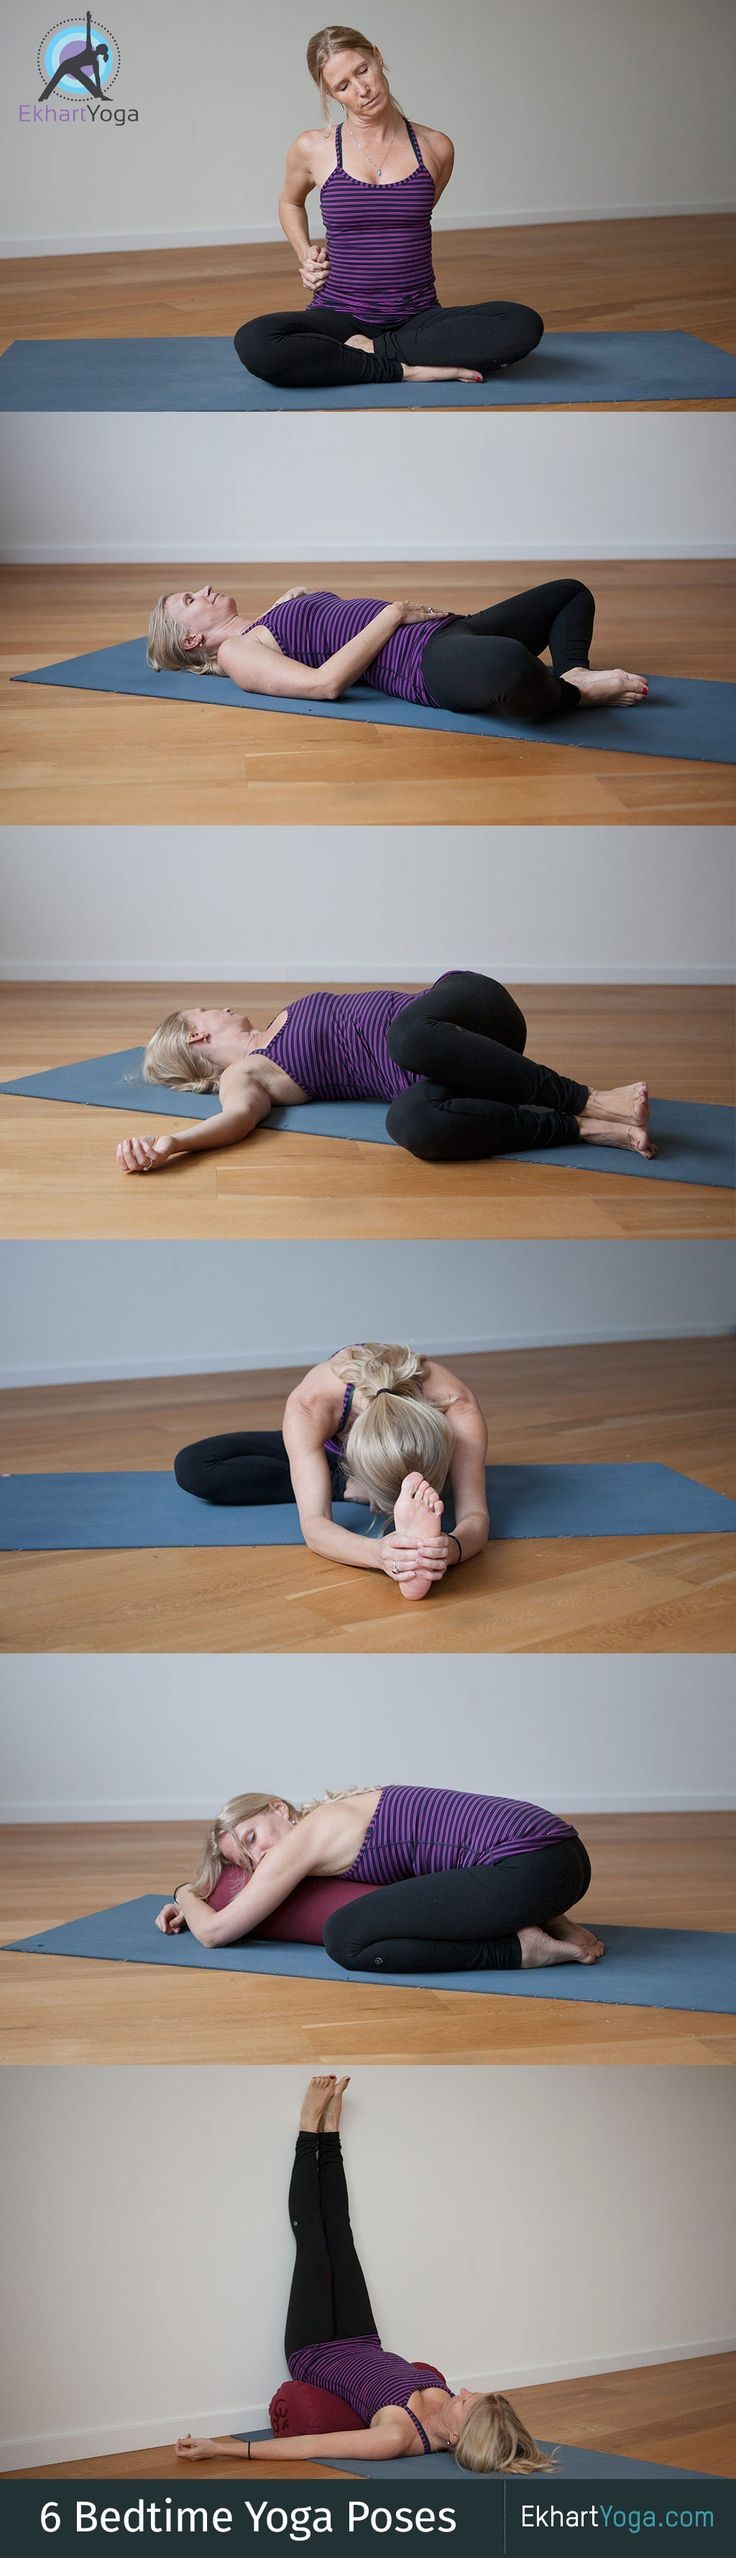 6 yoga poses for better sleep from Esther Ekhart.